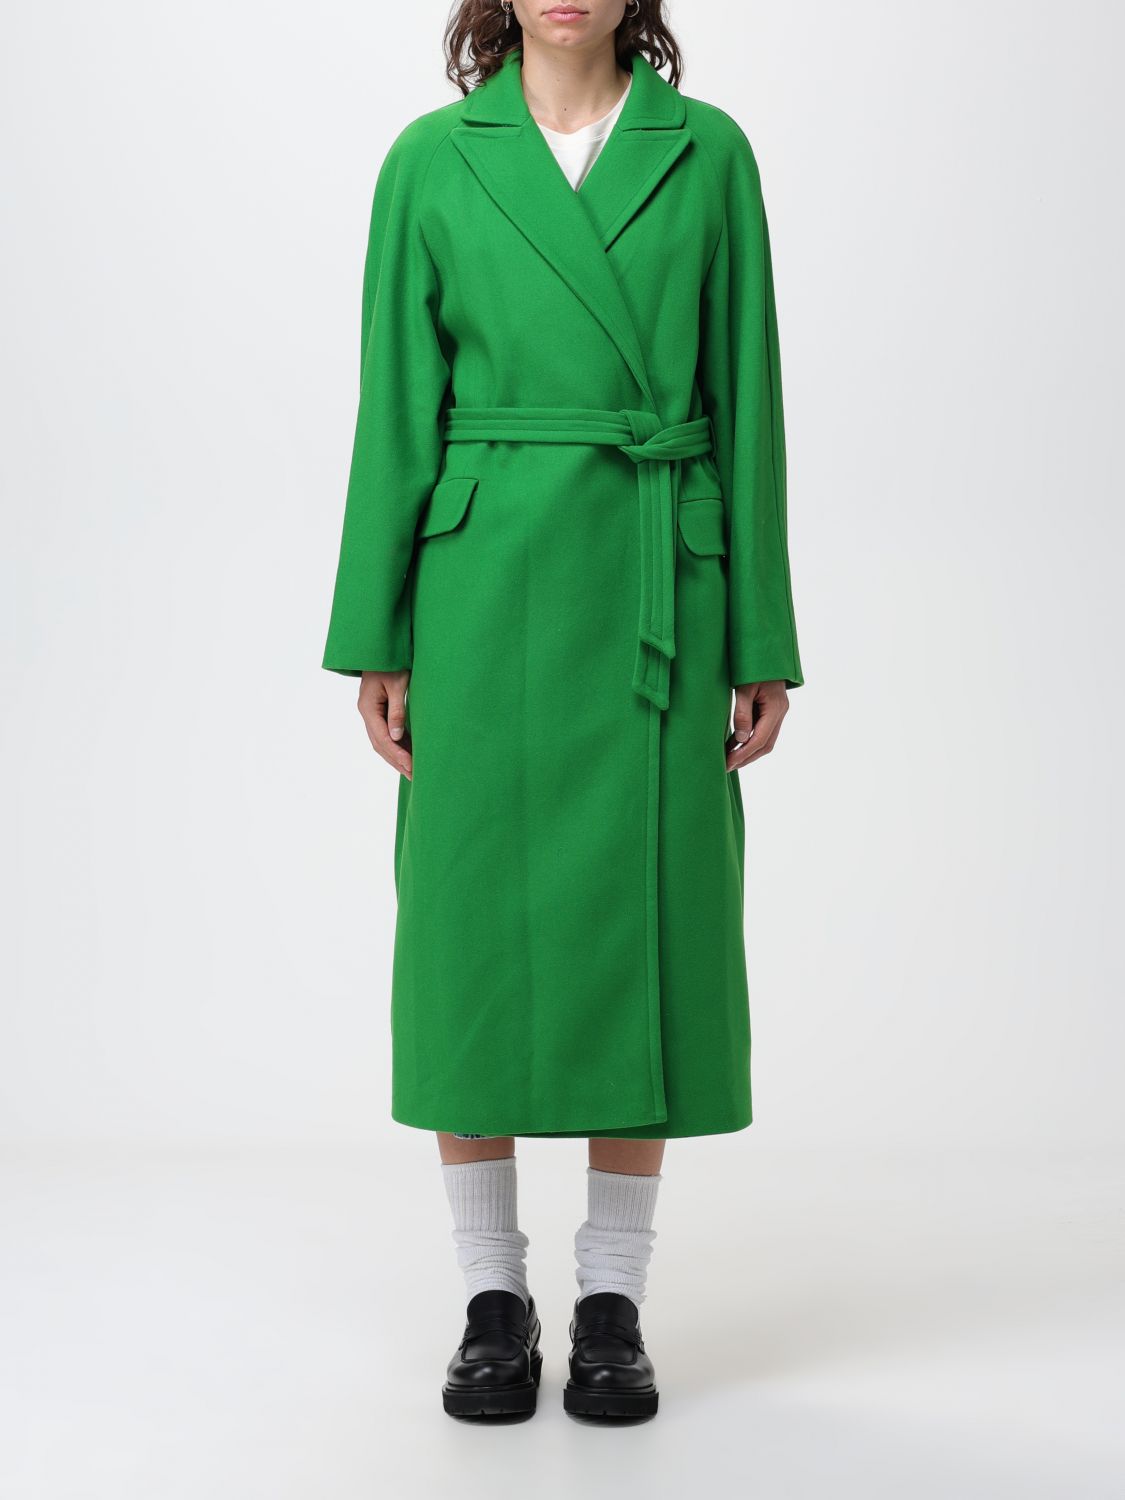 Shop Apc Coat A.p.c. Woman Color Green